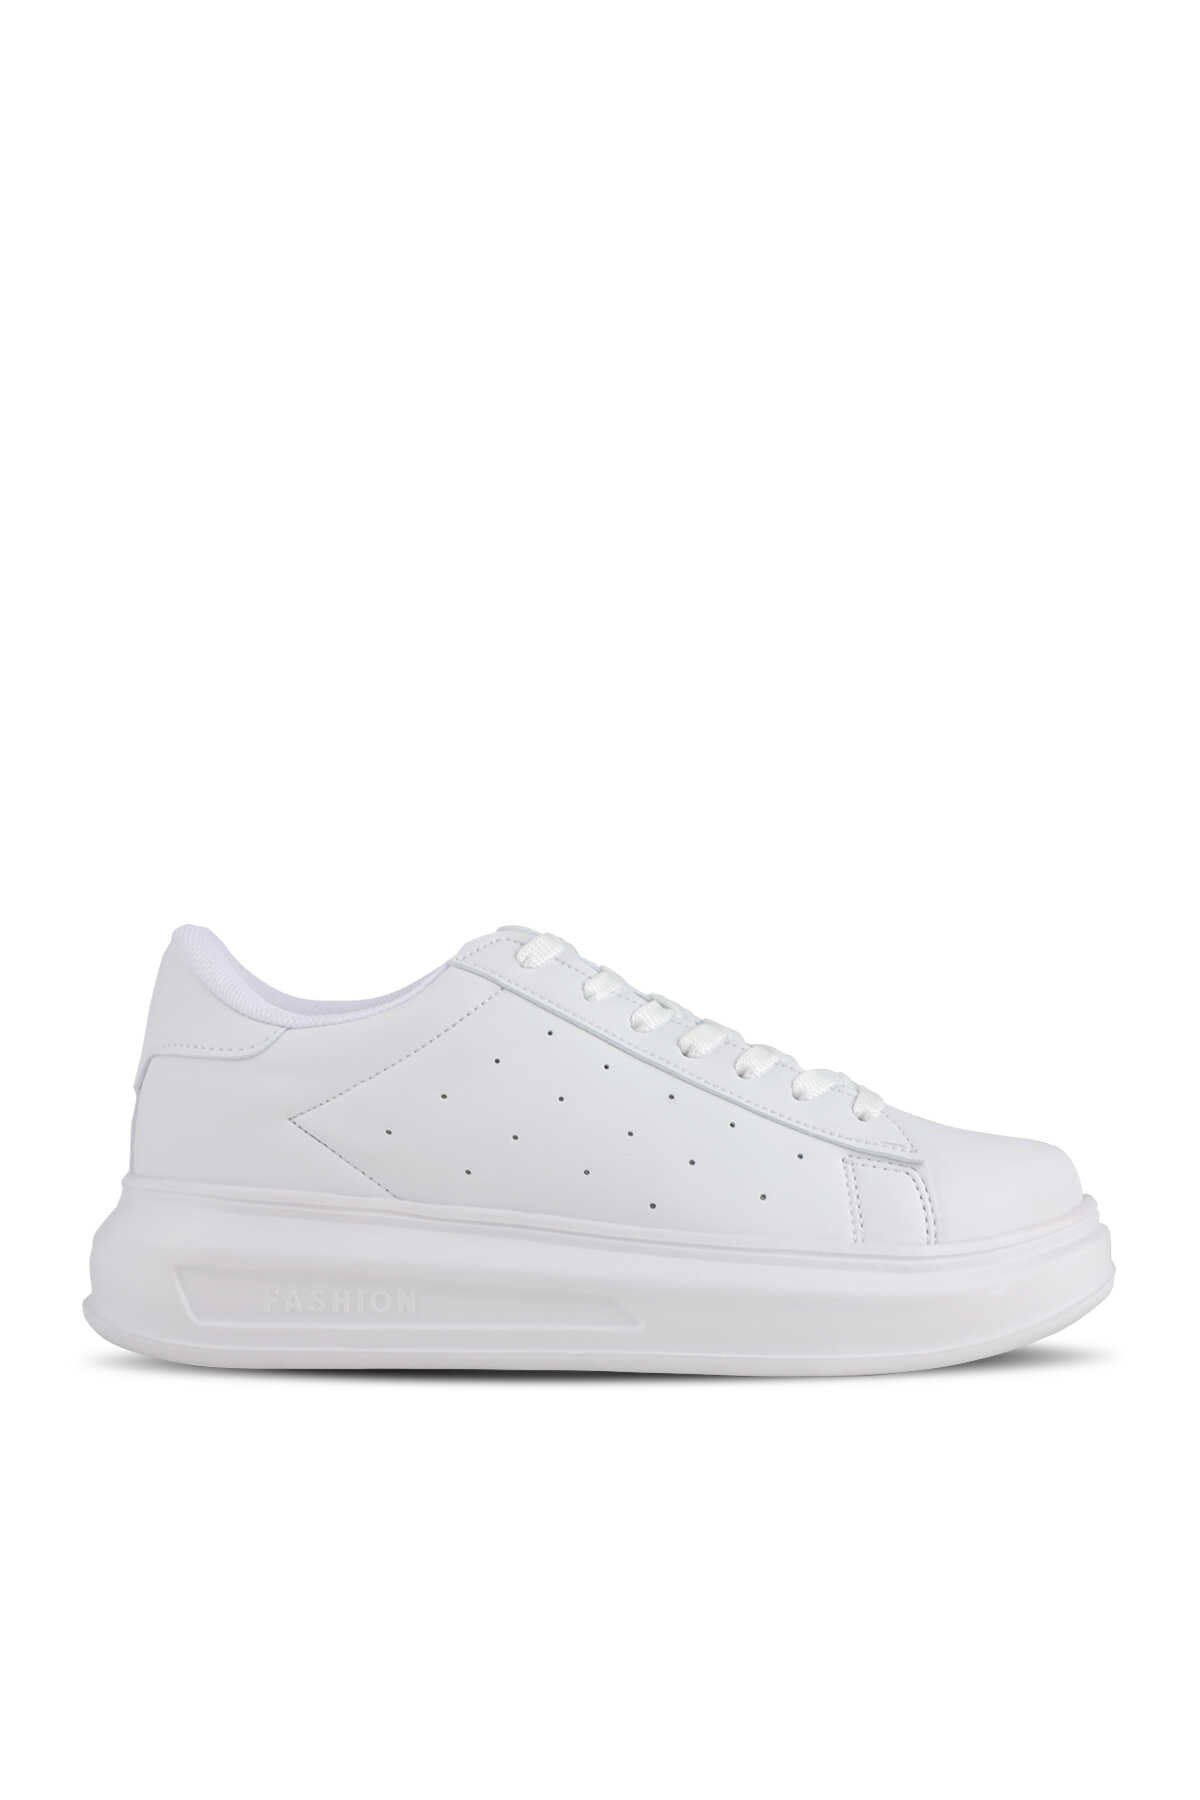 Slazenger - Slazenger ZARATHUSTRA Sneaker Kadın Ayakkabı Beyaz